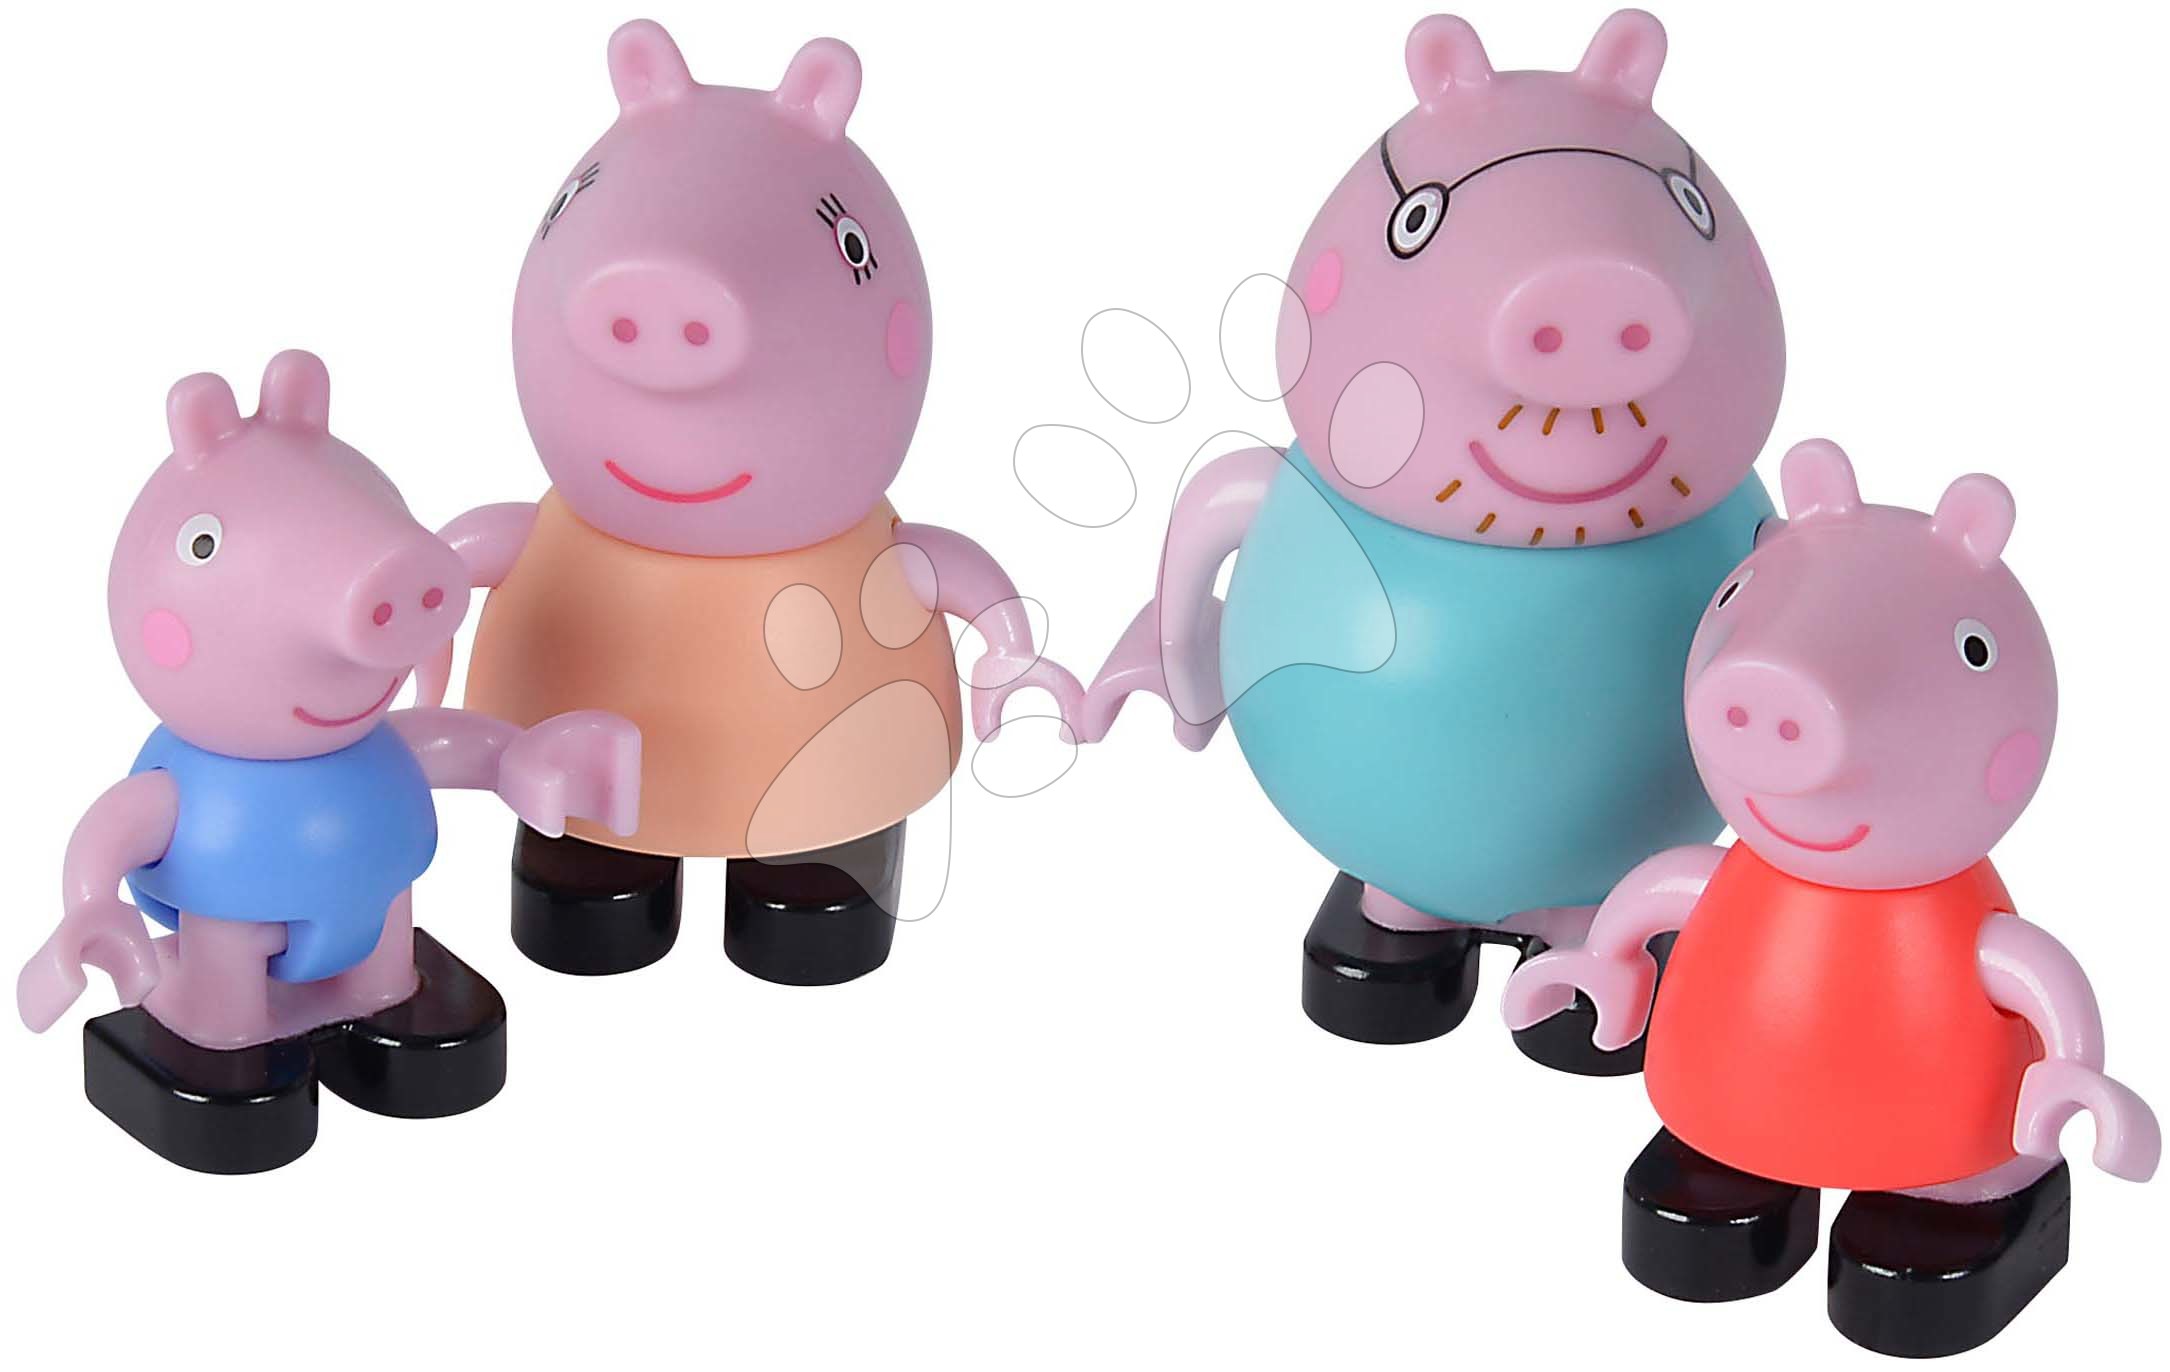 Stavebnica Peppa Pig Peppa's Family PlayBig Bloxx Big rodinka so 4 postavičkami od 1,5-5 rokov